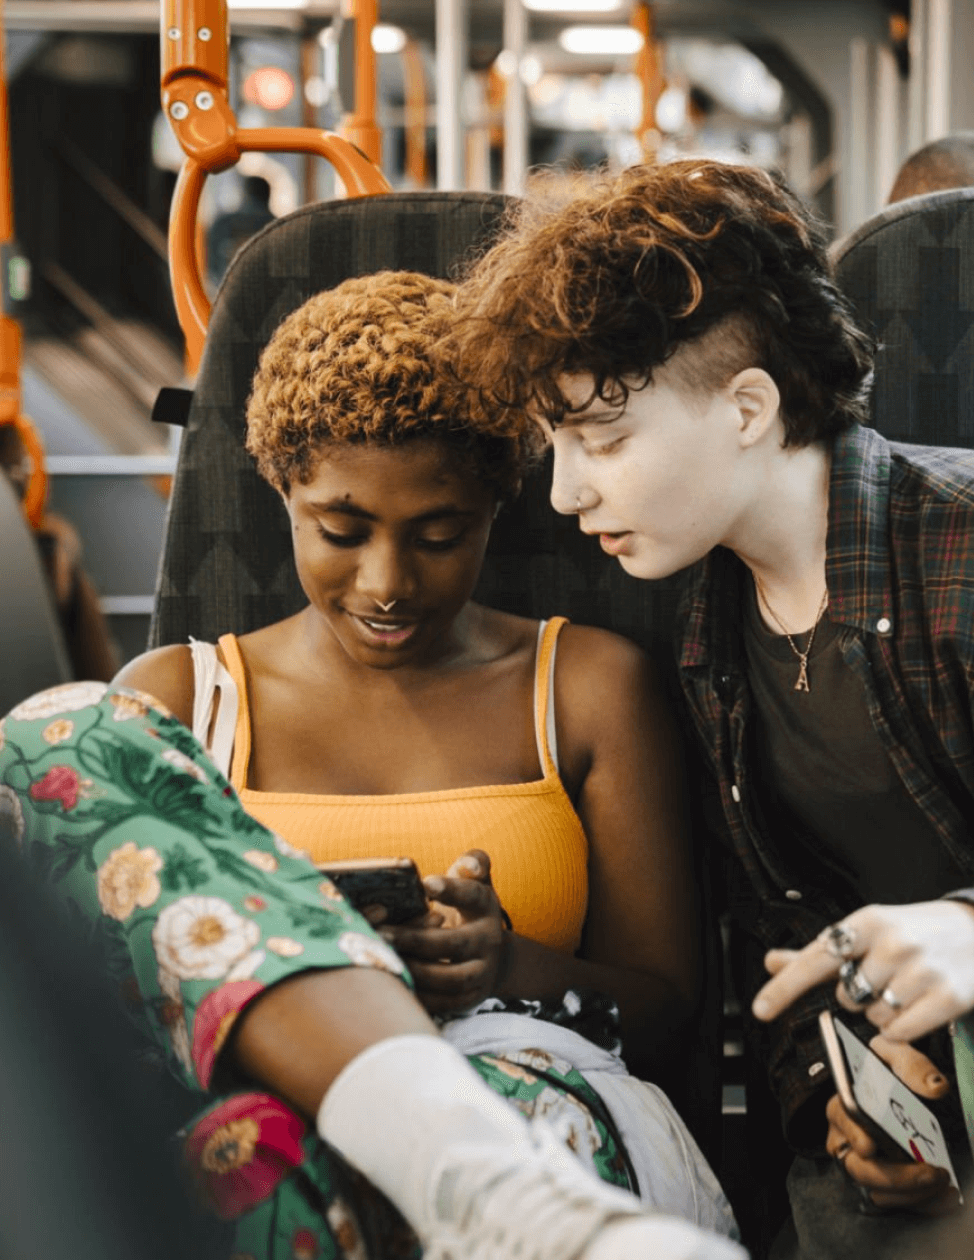 My Lovely Planet - Adolescents jouant sur smartphone dans le bus